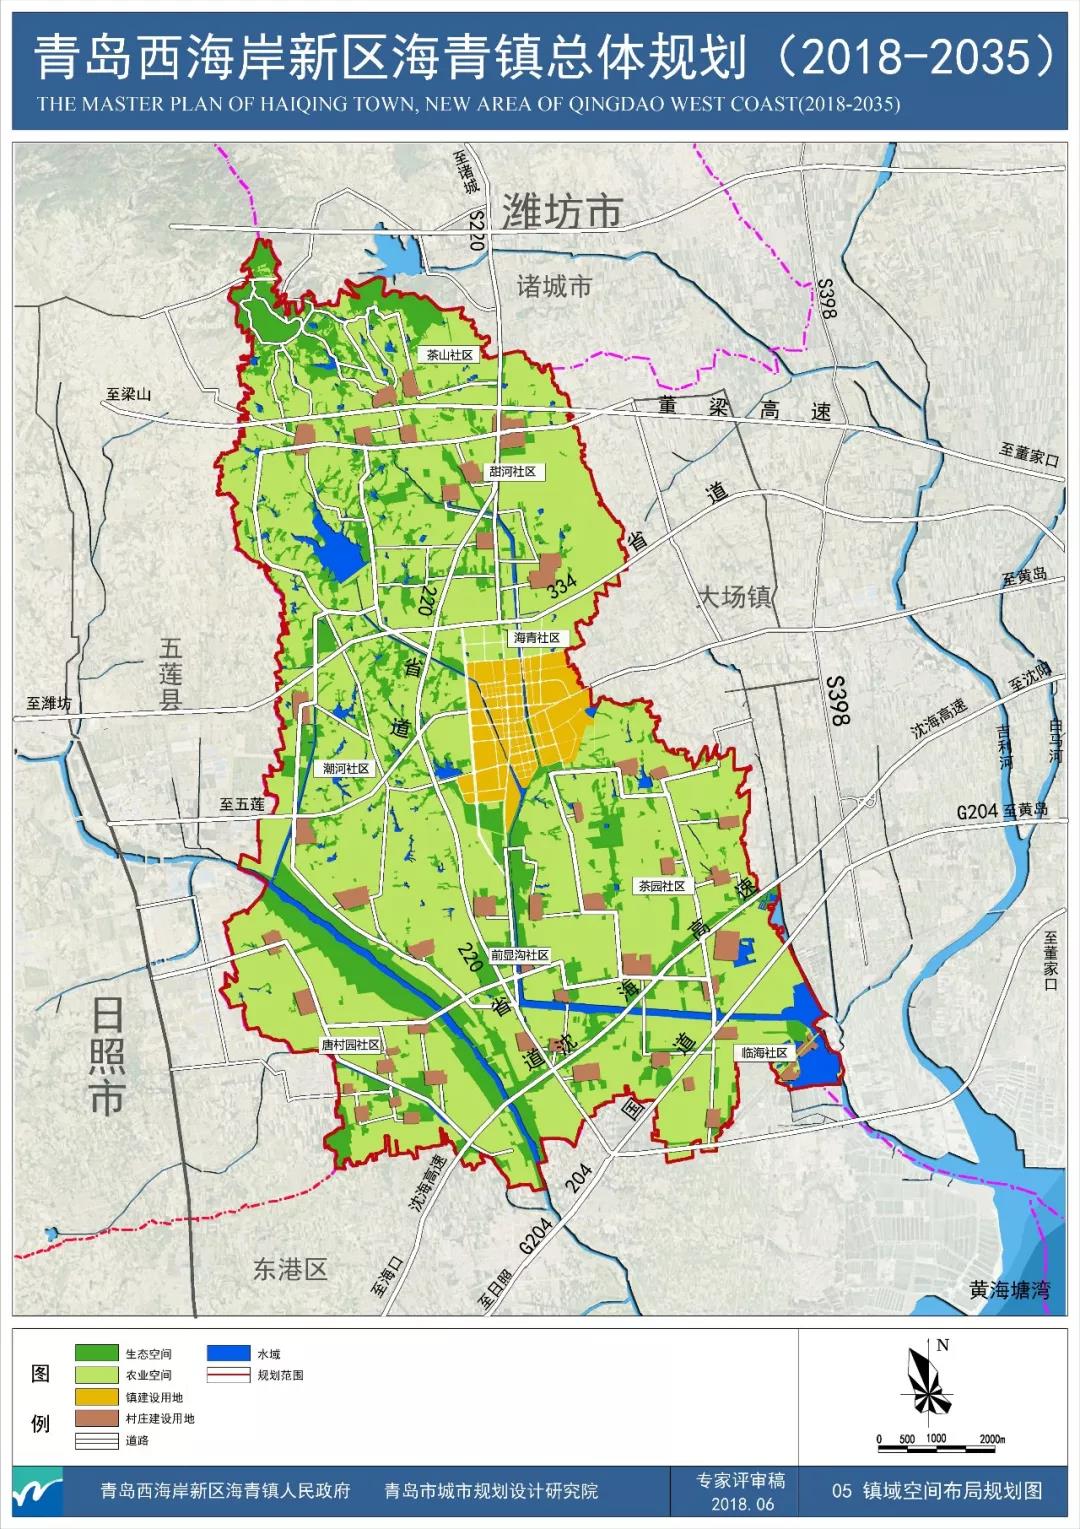 官方发布:《青岛西海岸新区海青镇镇域总体规划(2018